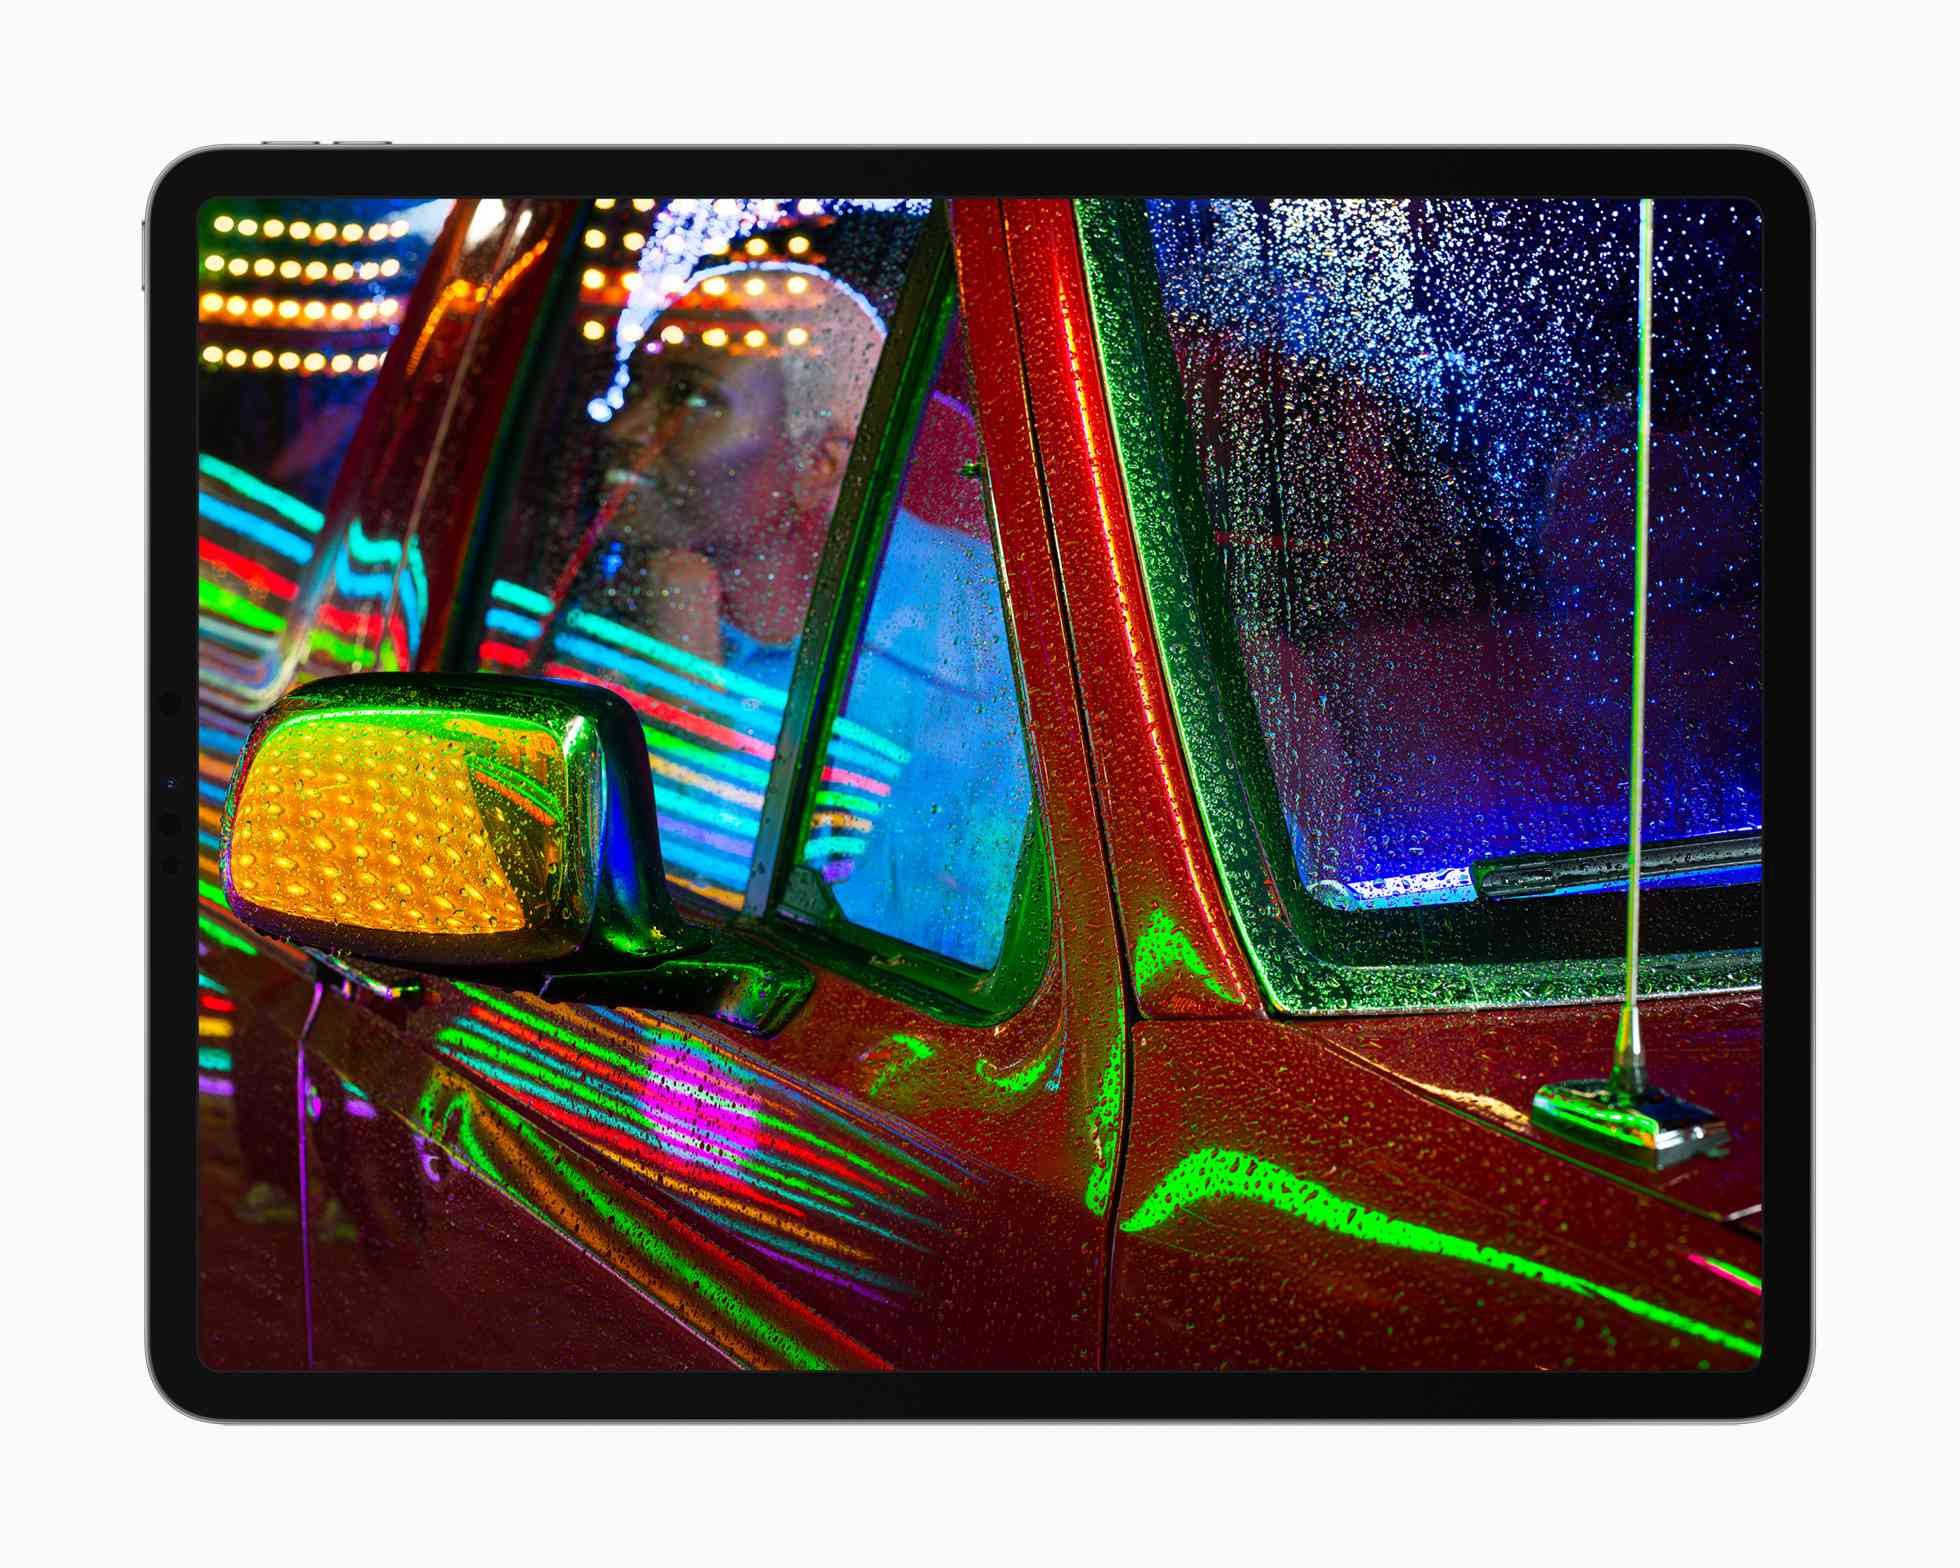 Apple iPad Pro liquidXDR-display met een foto van iemand in een pick-up truck met neonlichten die weerkaatsen op het metaal en glas.